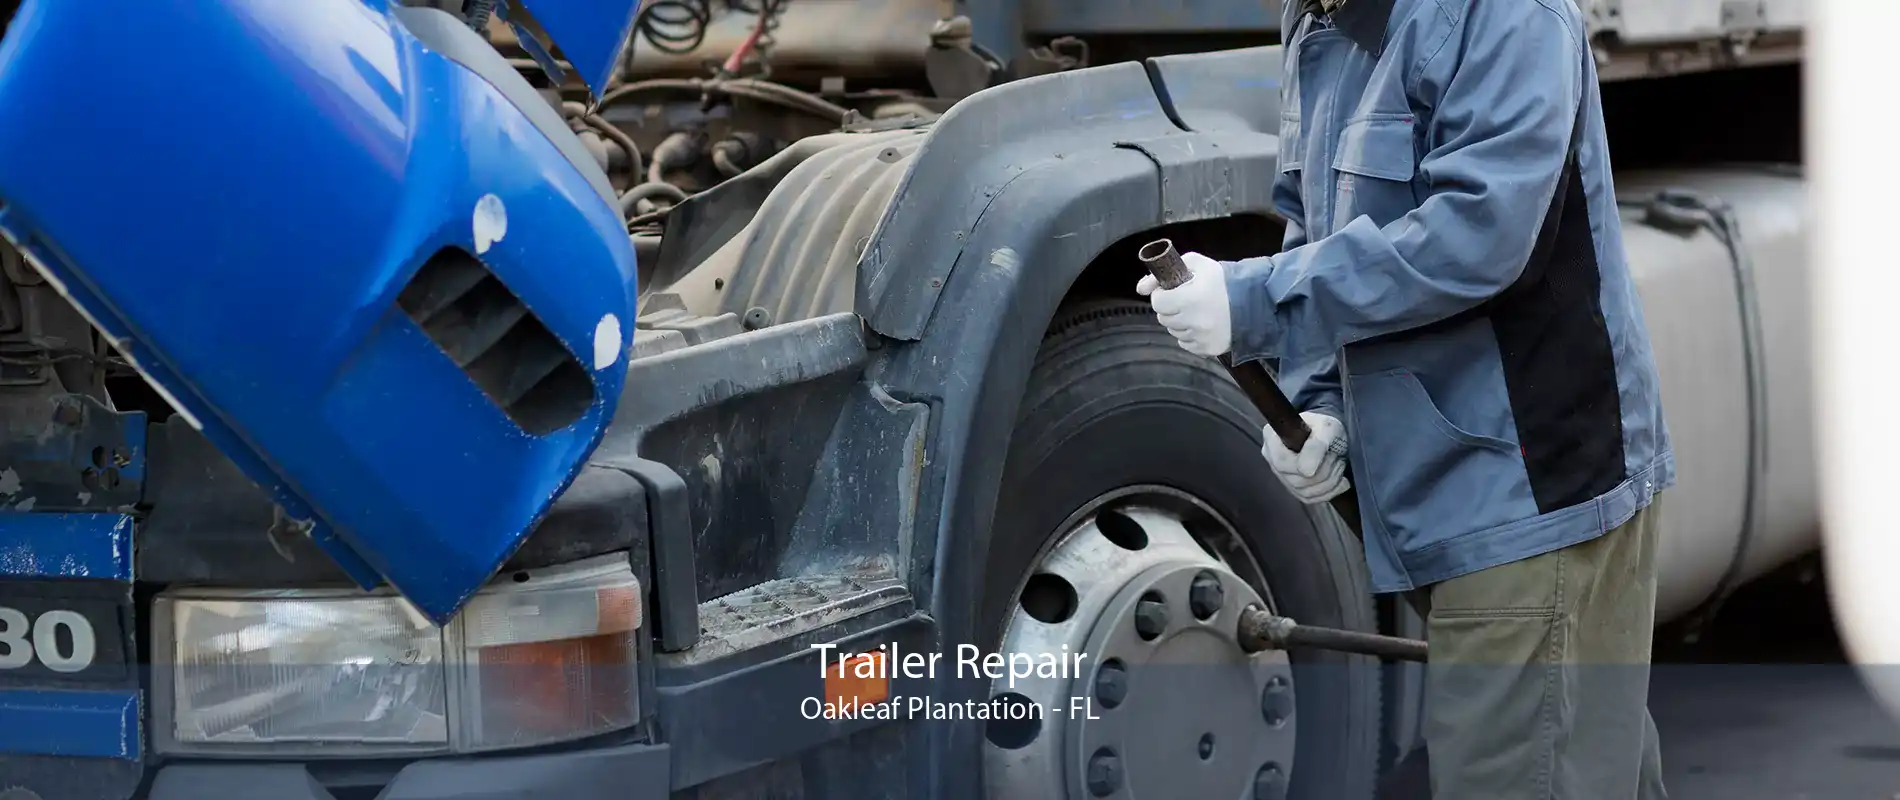 Trailer Repair Oakleaf Plantation - FL